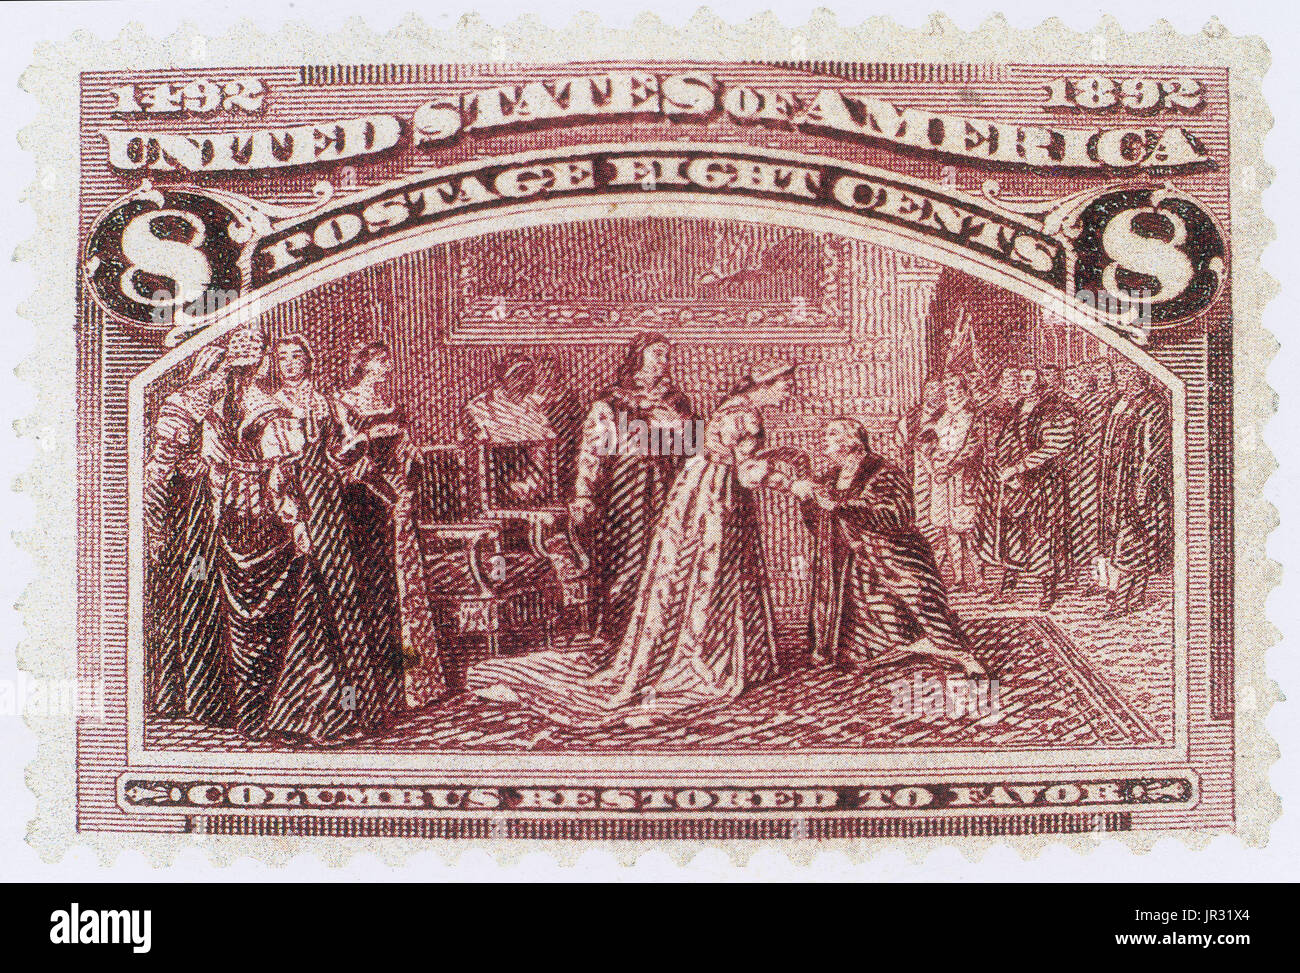 Columbus restauré pour favoriser, US Postage Stamp,1893 Banque D'Images